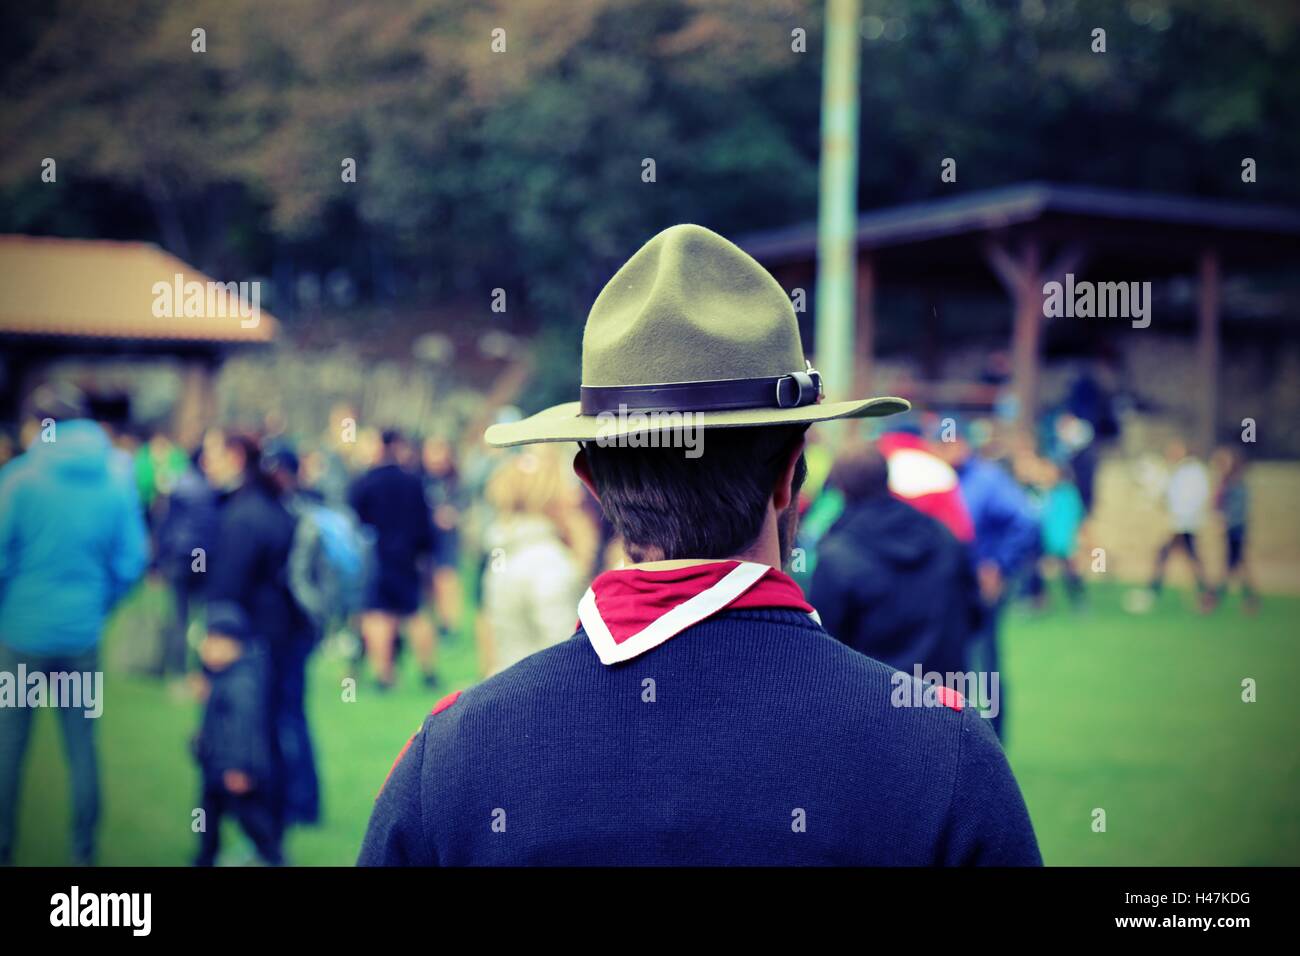 Cappello scout immagini e fotografie stock ad alta risoluzione - Alamy